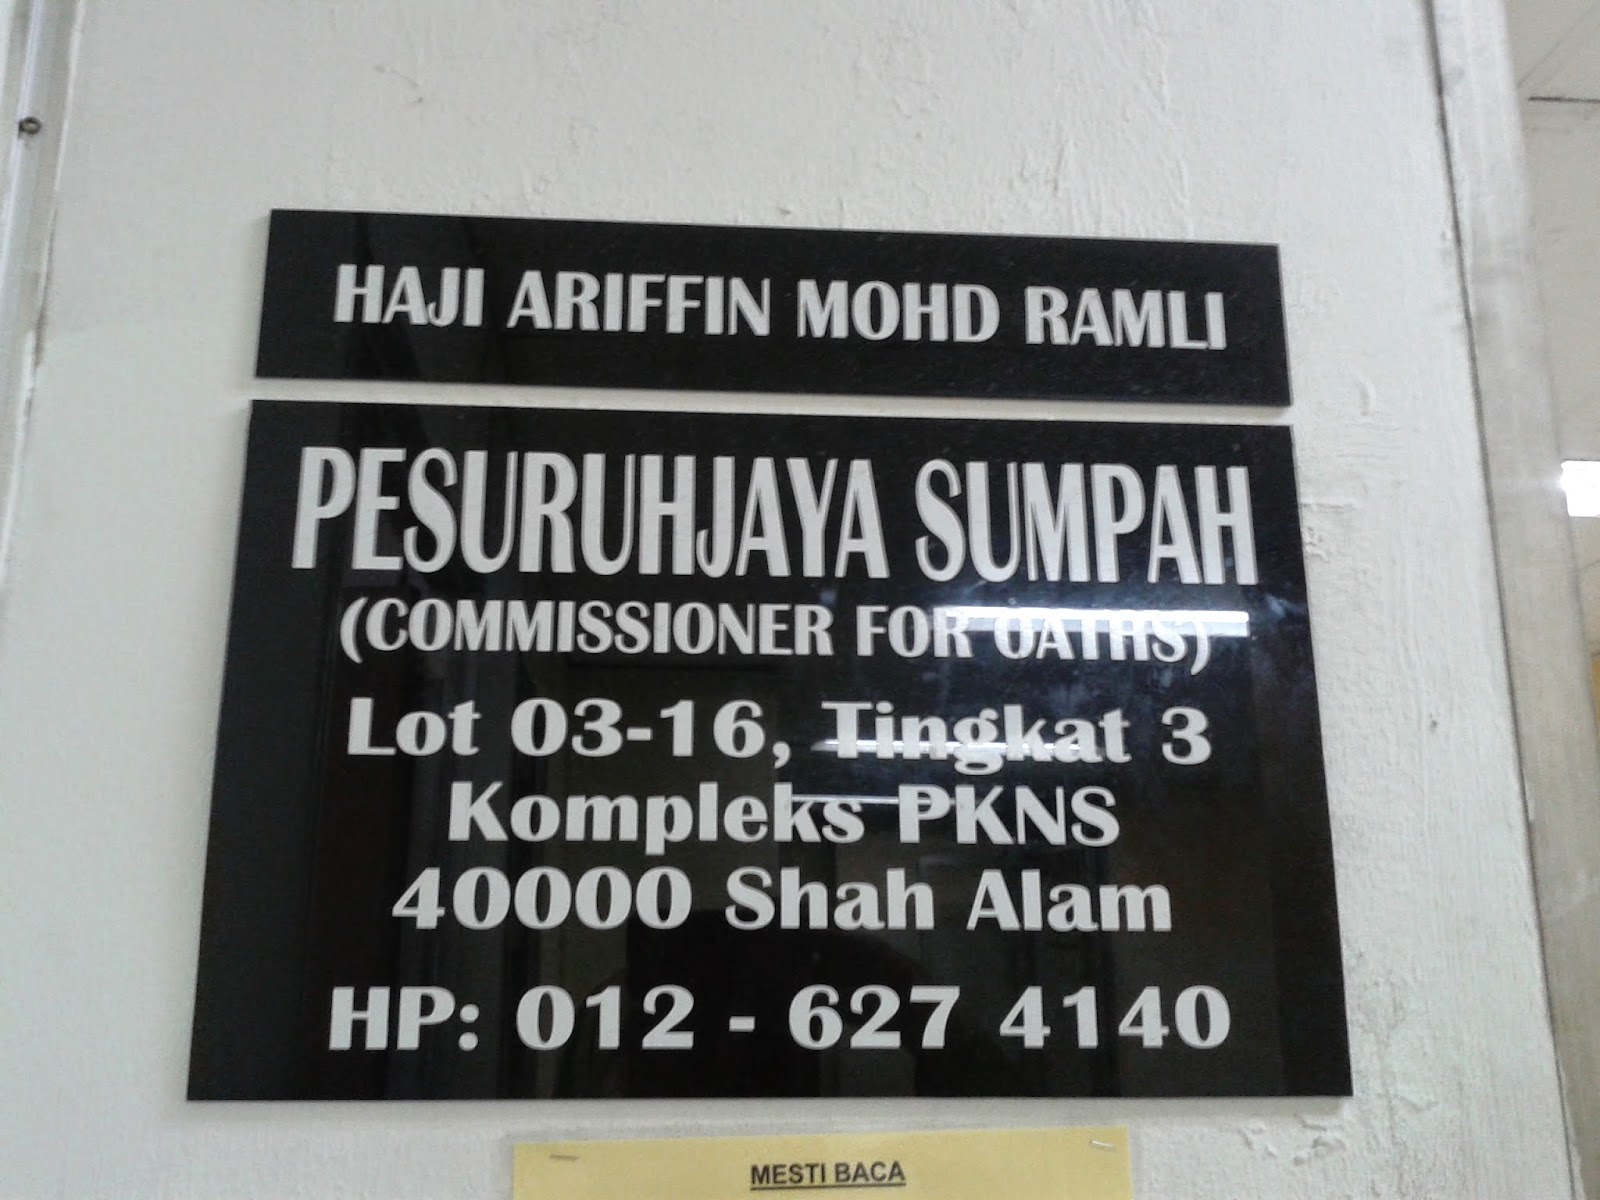 Pesuruhjaya Sumpah Kota Bharu - Commissioner of oaths based in kota